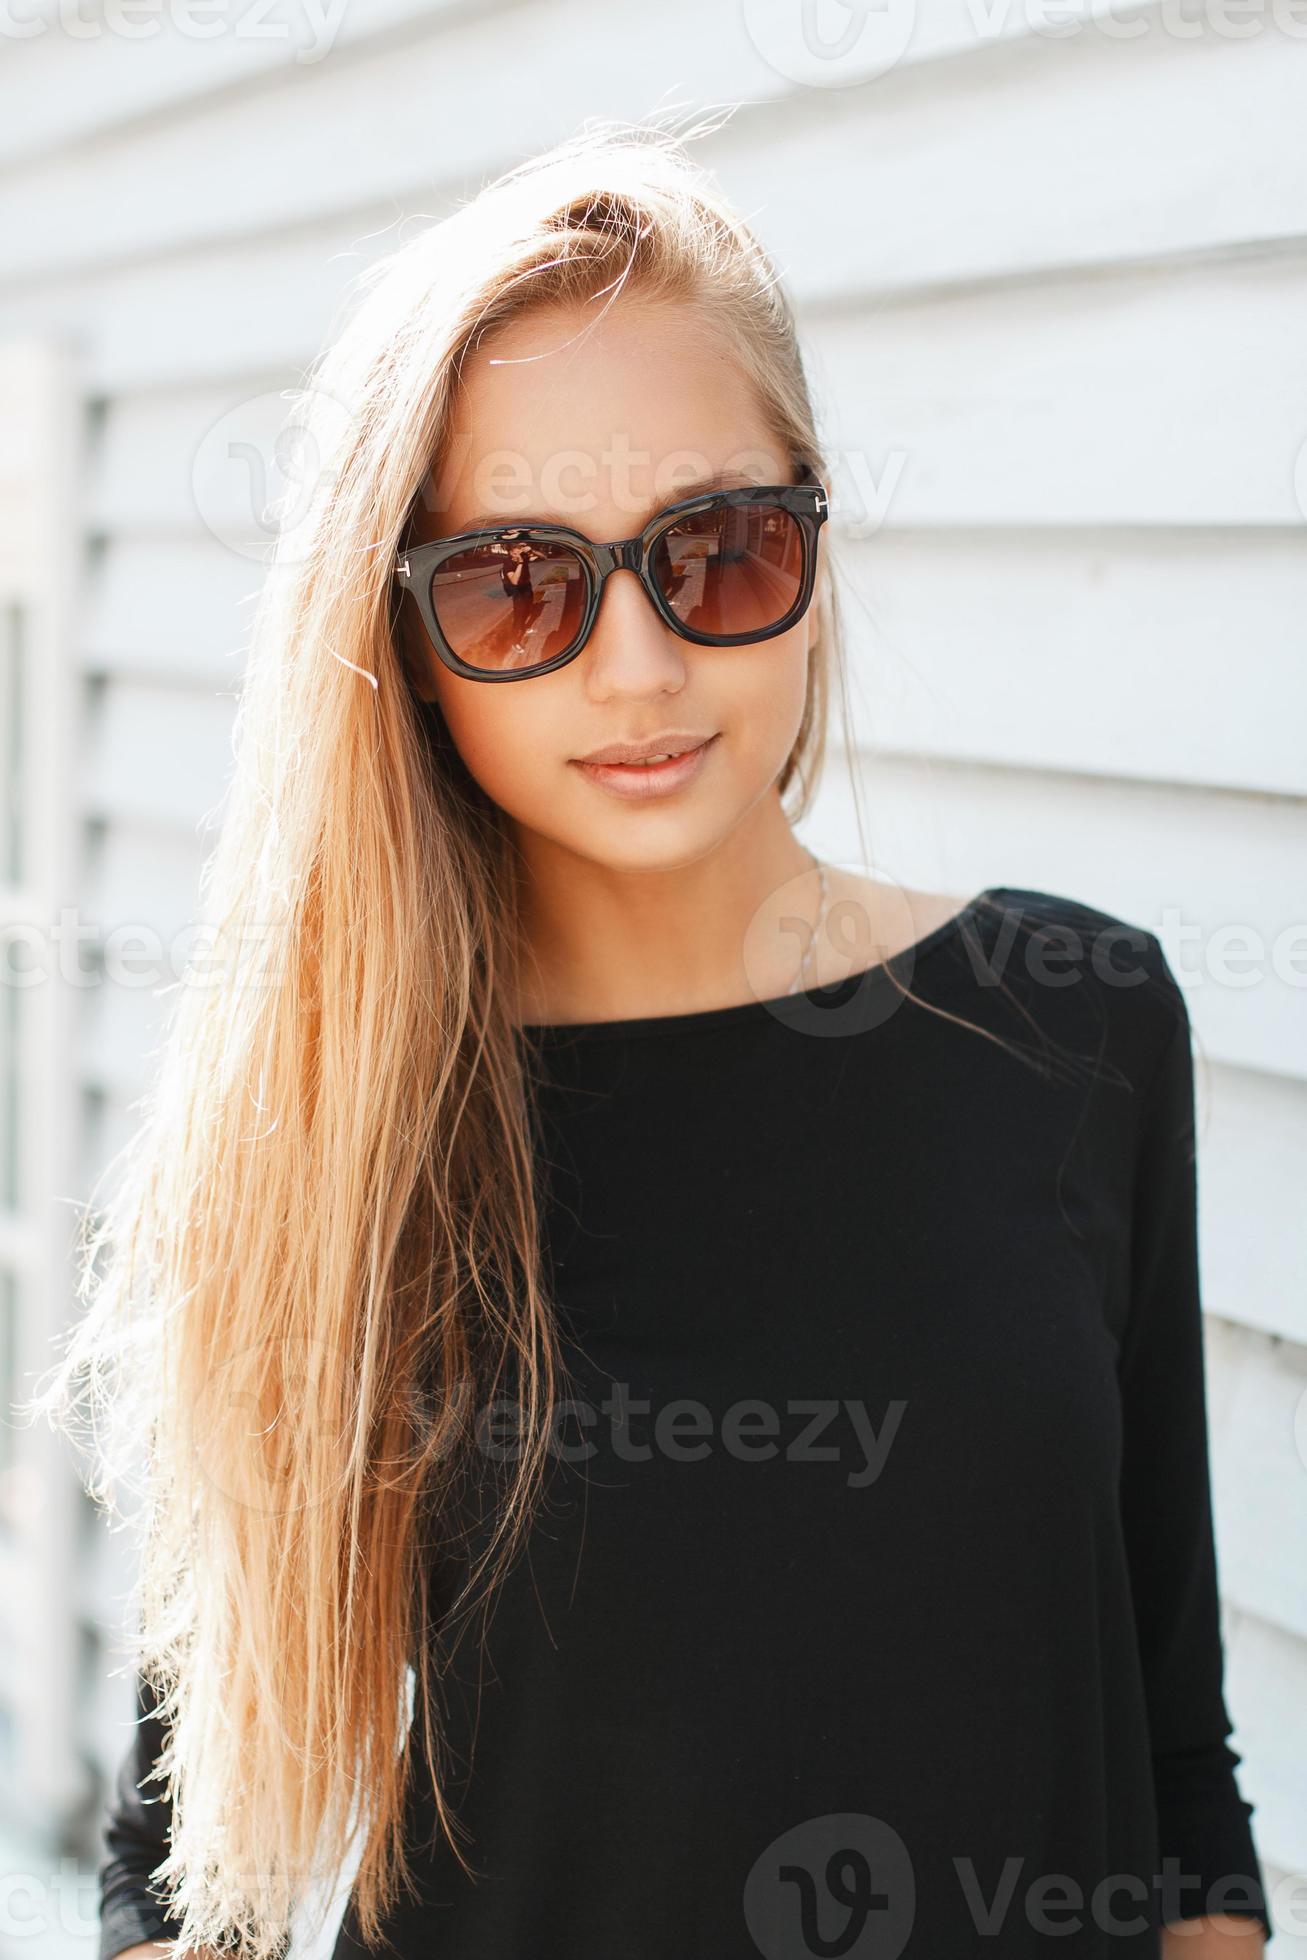 amateur Eigenlijk lavendel stijlvolle mooie vrouw in zonnebril in de buurt van een houten muur 1042344  Stockfoto